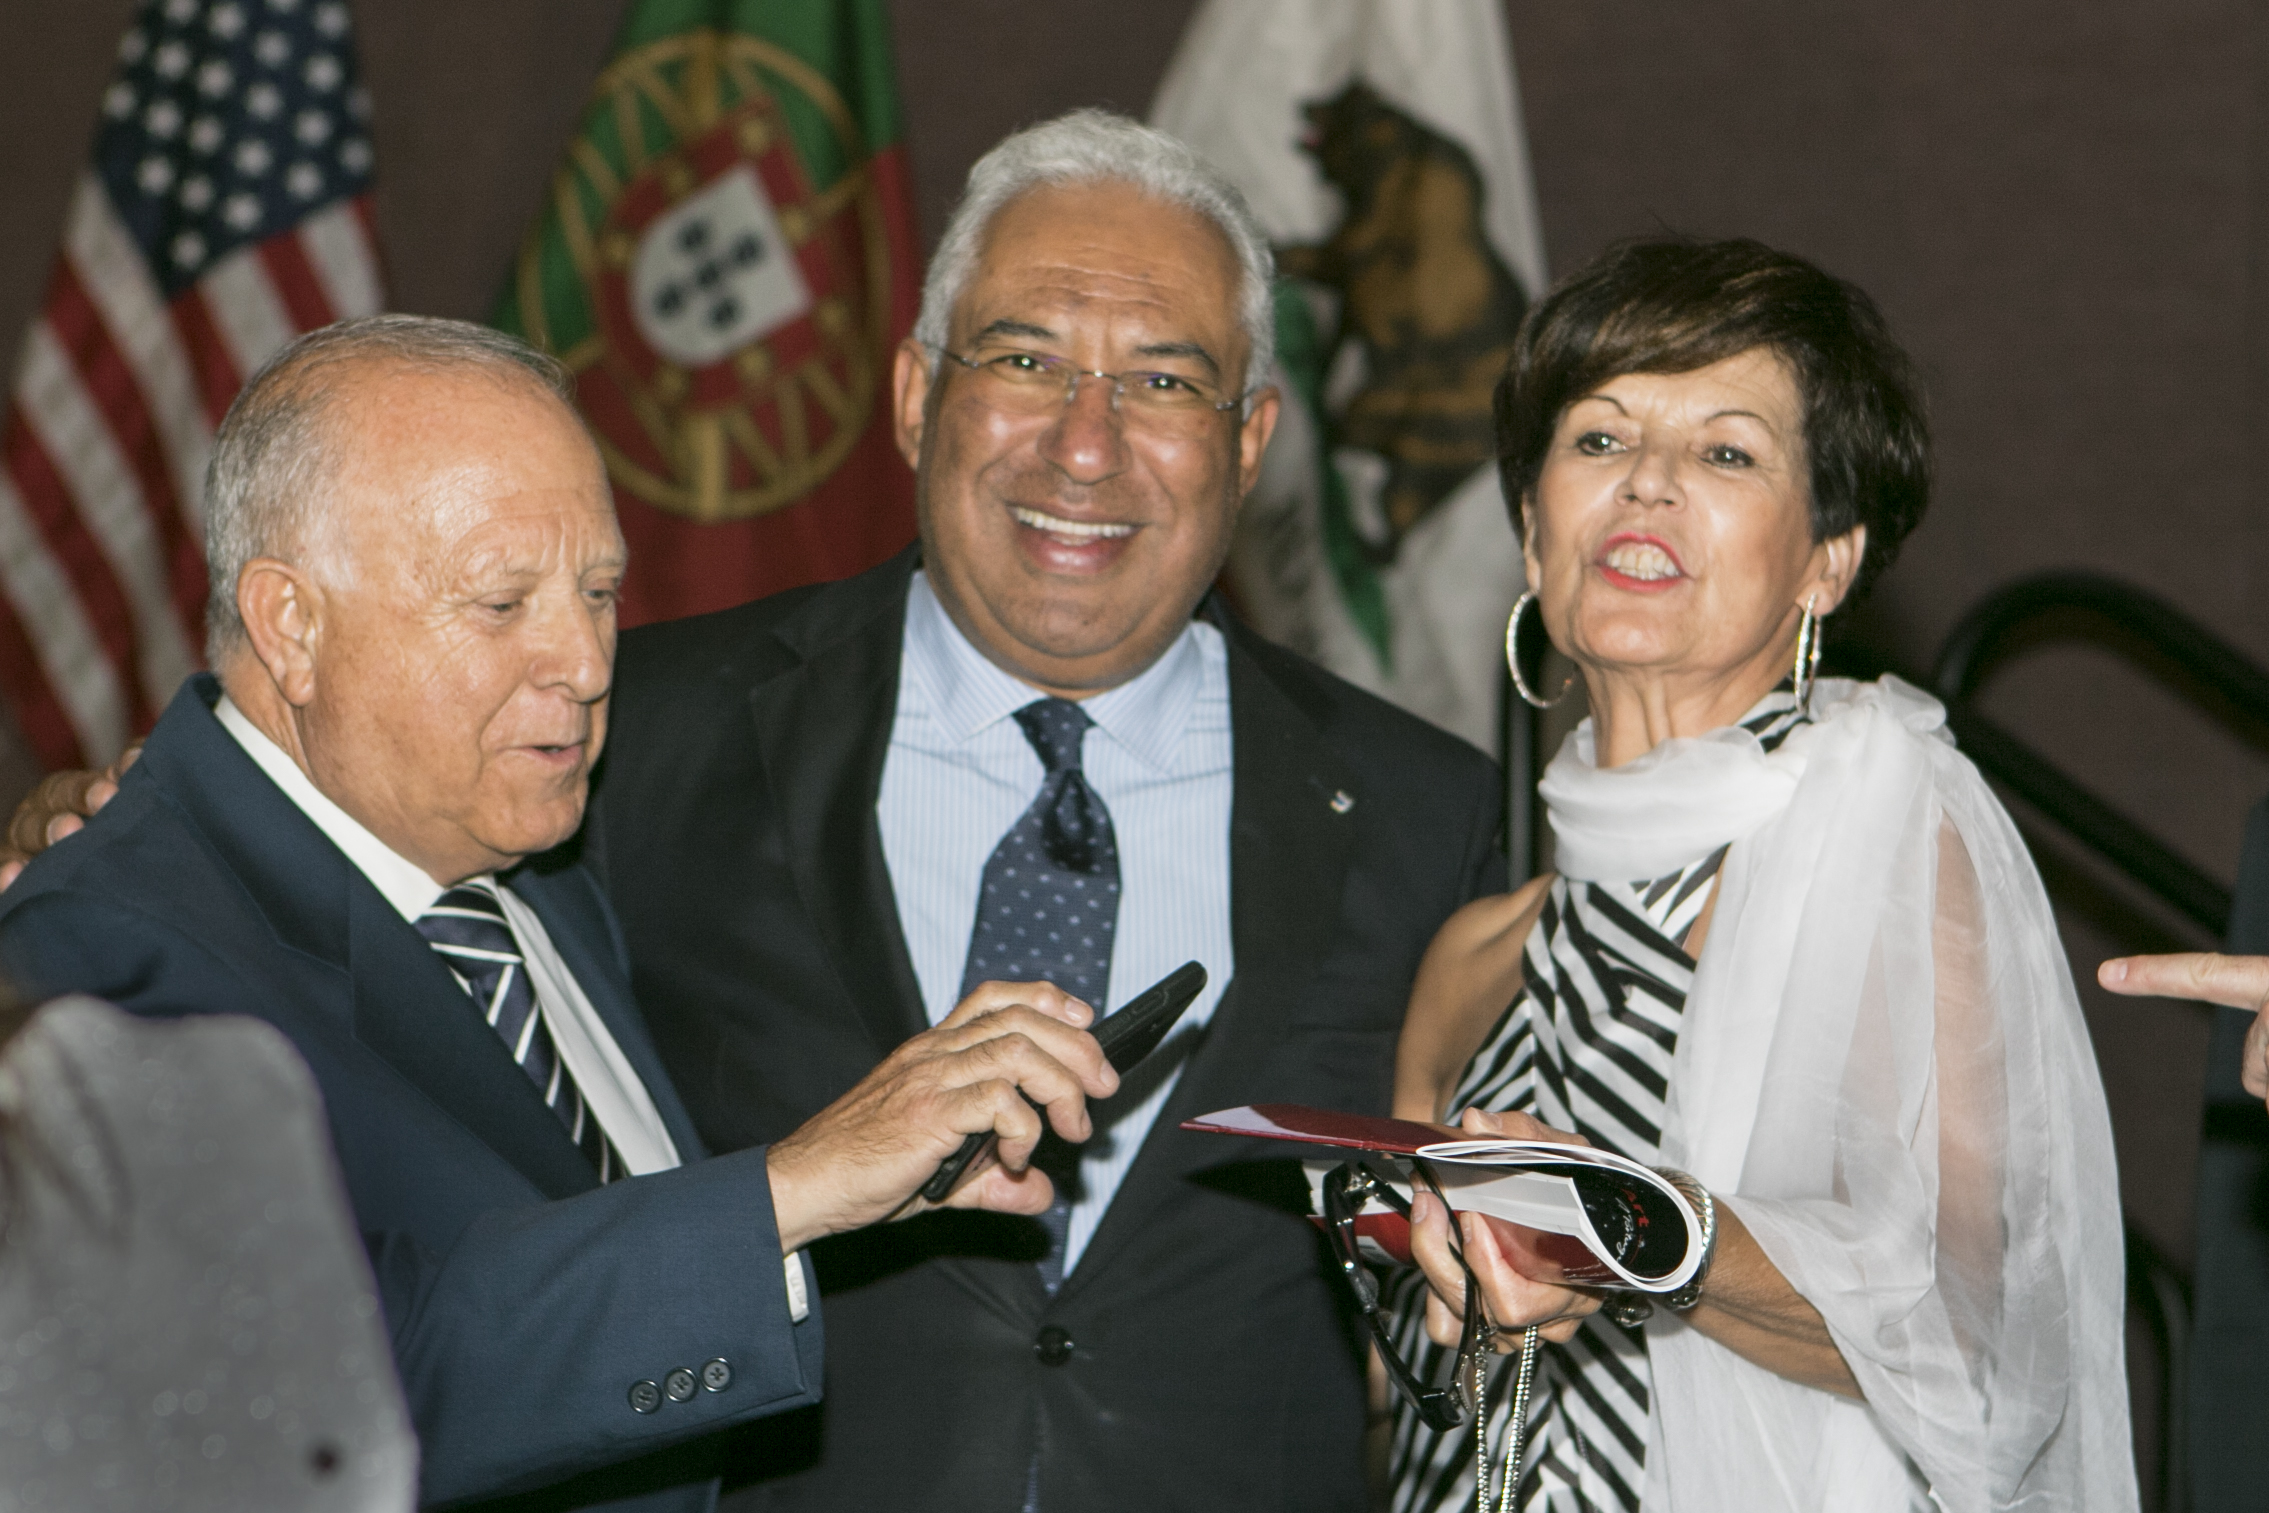 Event_2018 Portuguese Prime Minister Reception342